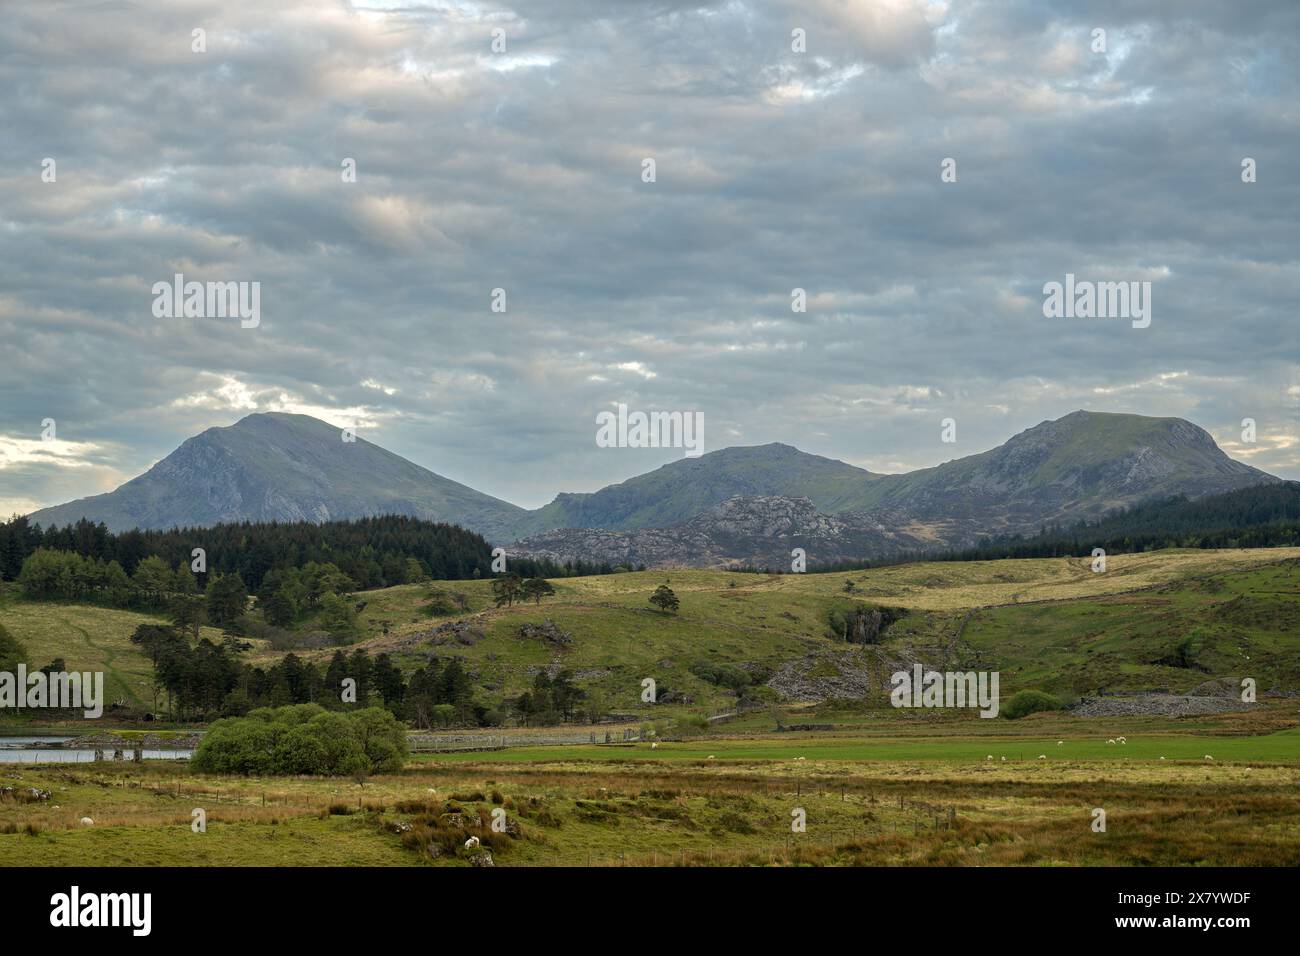 Vue panoramique sur la chaîne de montagnes Hebog de Moel Hebog, Moel yr Ogof et Moel Lefn dans le parc national d'Eryri, pays de Galles, Royaume-Uni. Banque D'Images